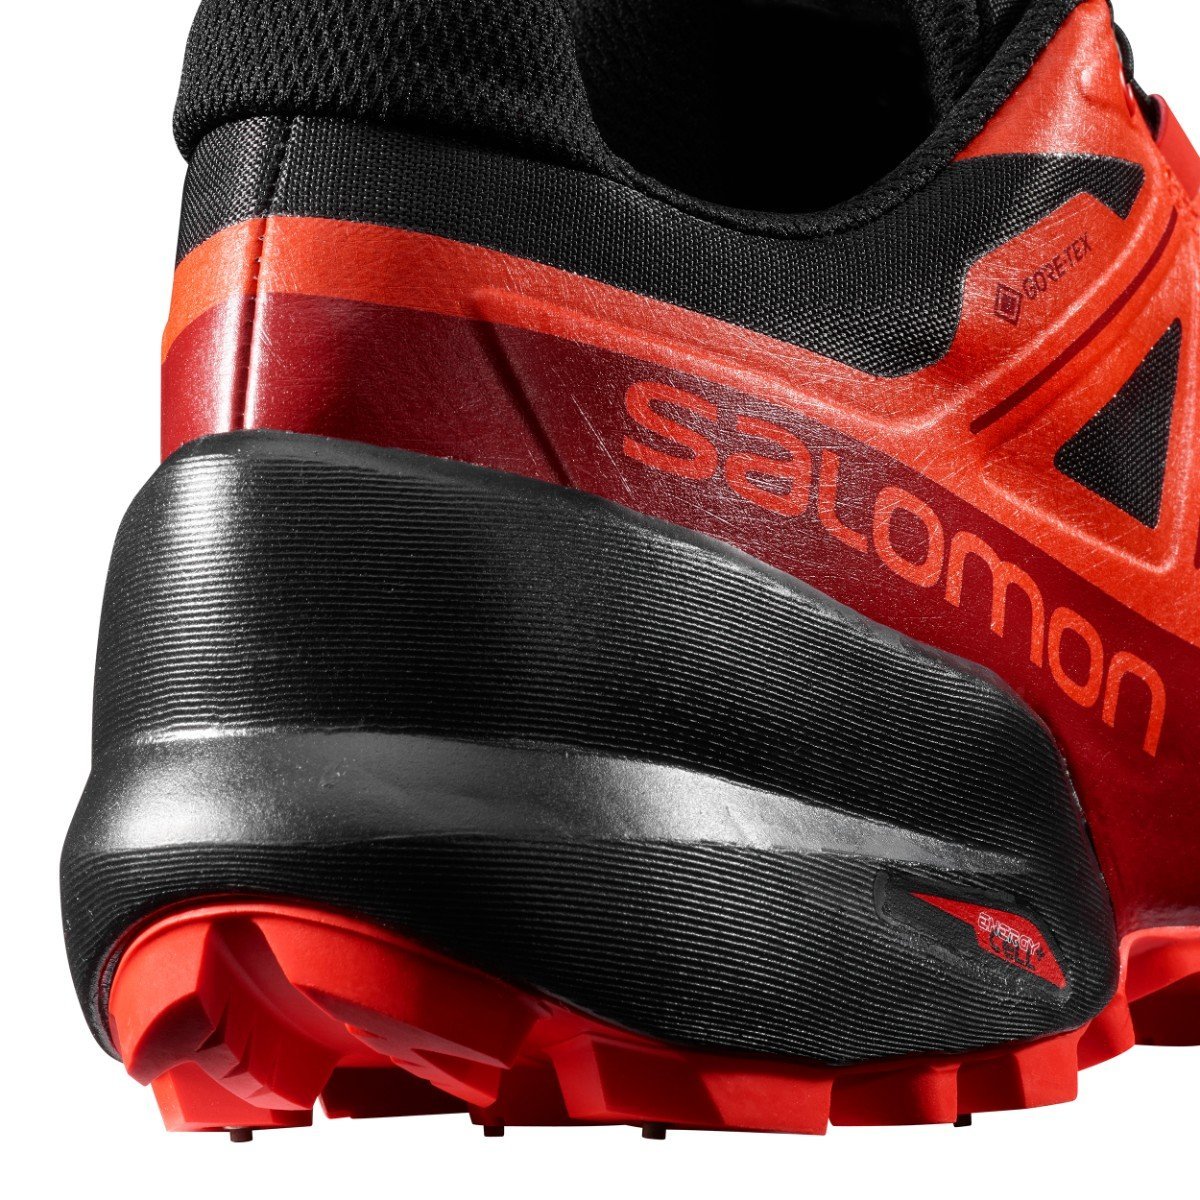 Obuv Salomon Spikecross 5 GTX – čierna/červená